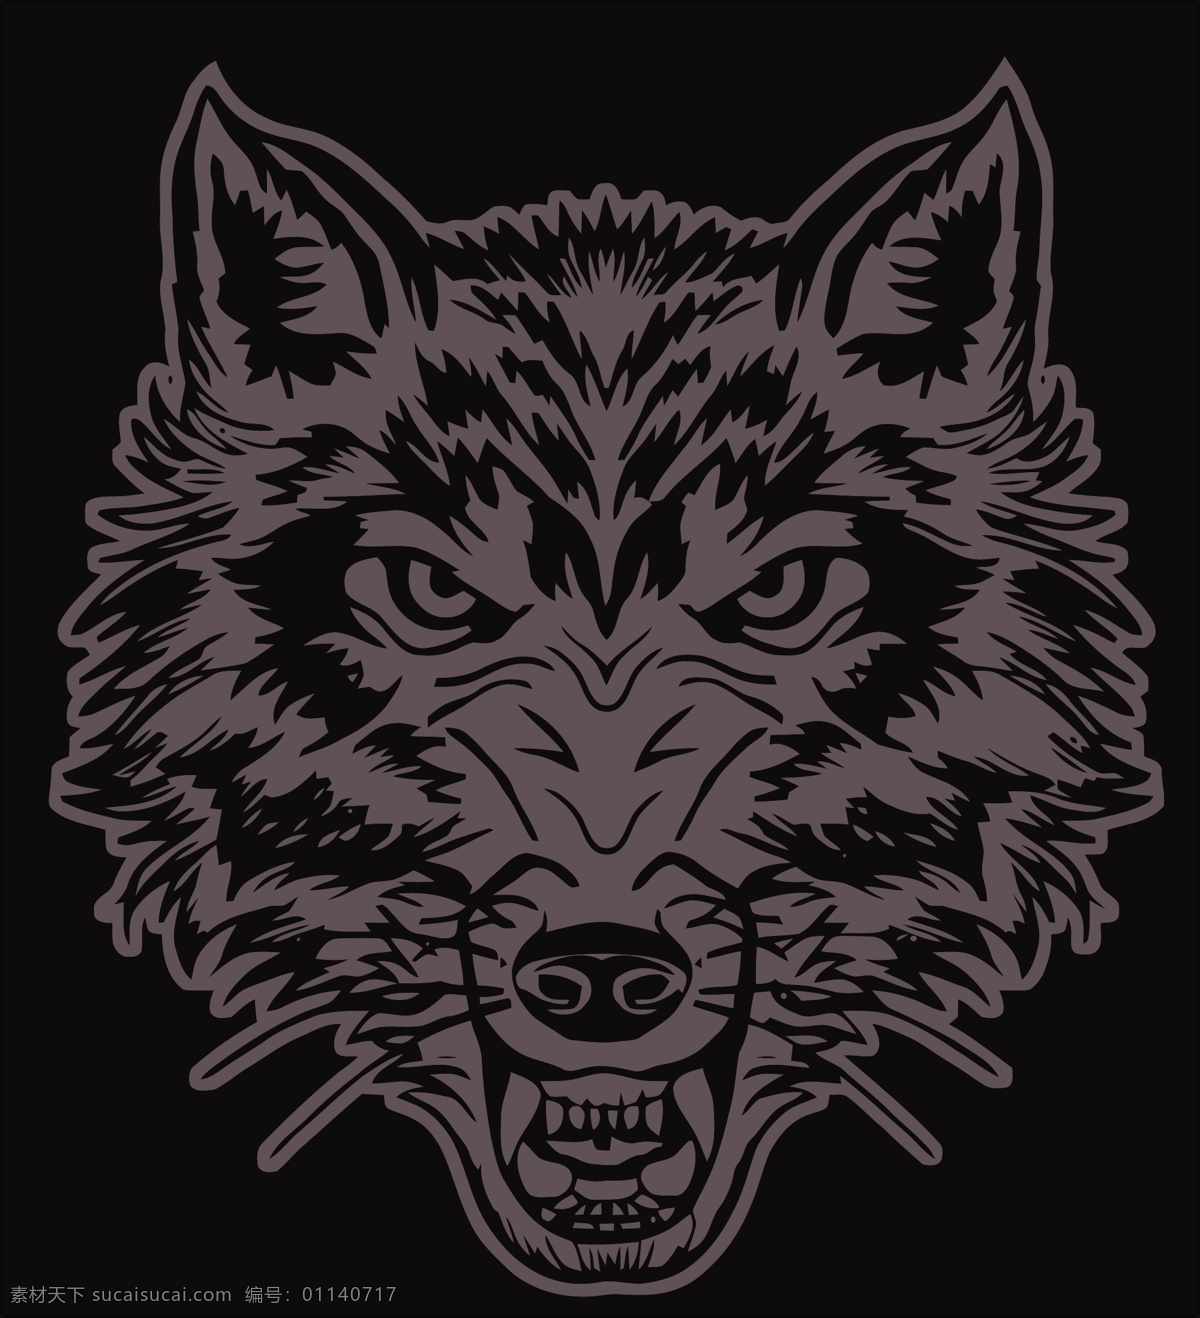 狼头 线条狼 草原狼 雪狼 大灰狼 标志图标 企业 logo 标志 金貂绒图案 生物世界 野生动物